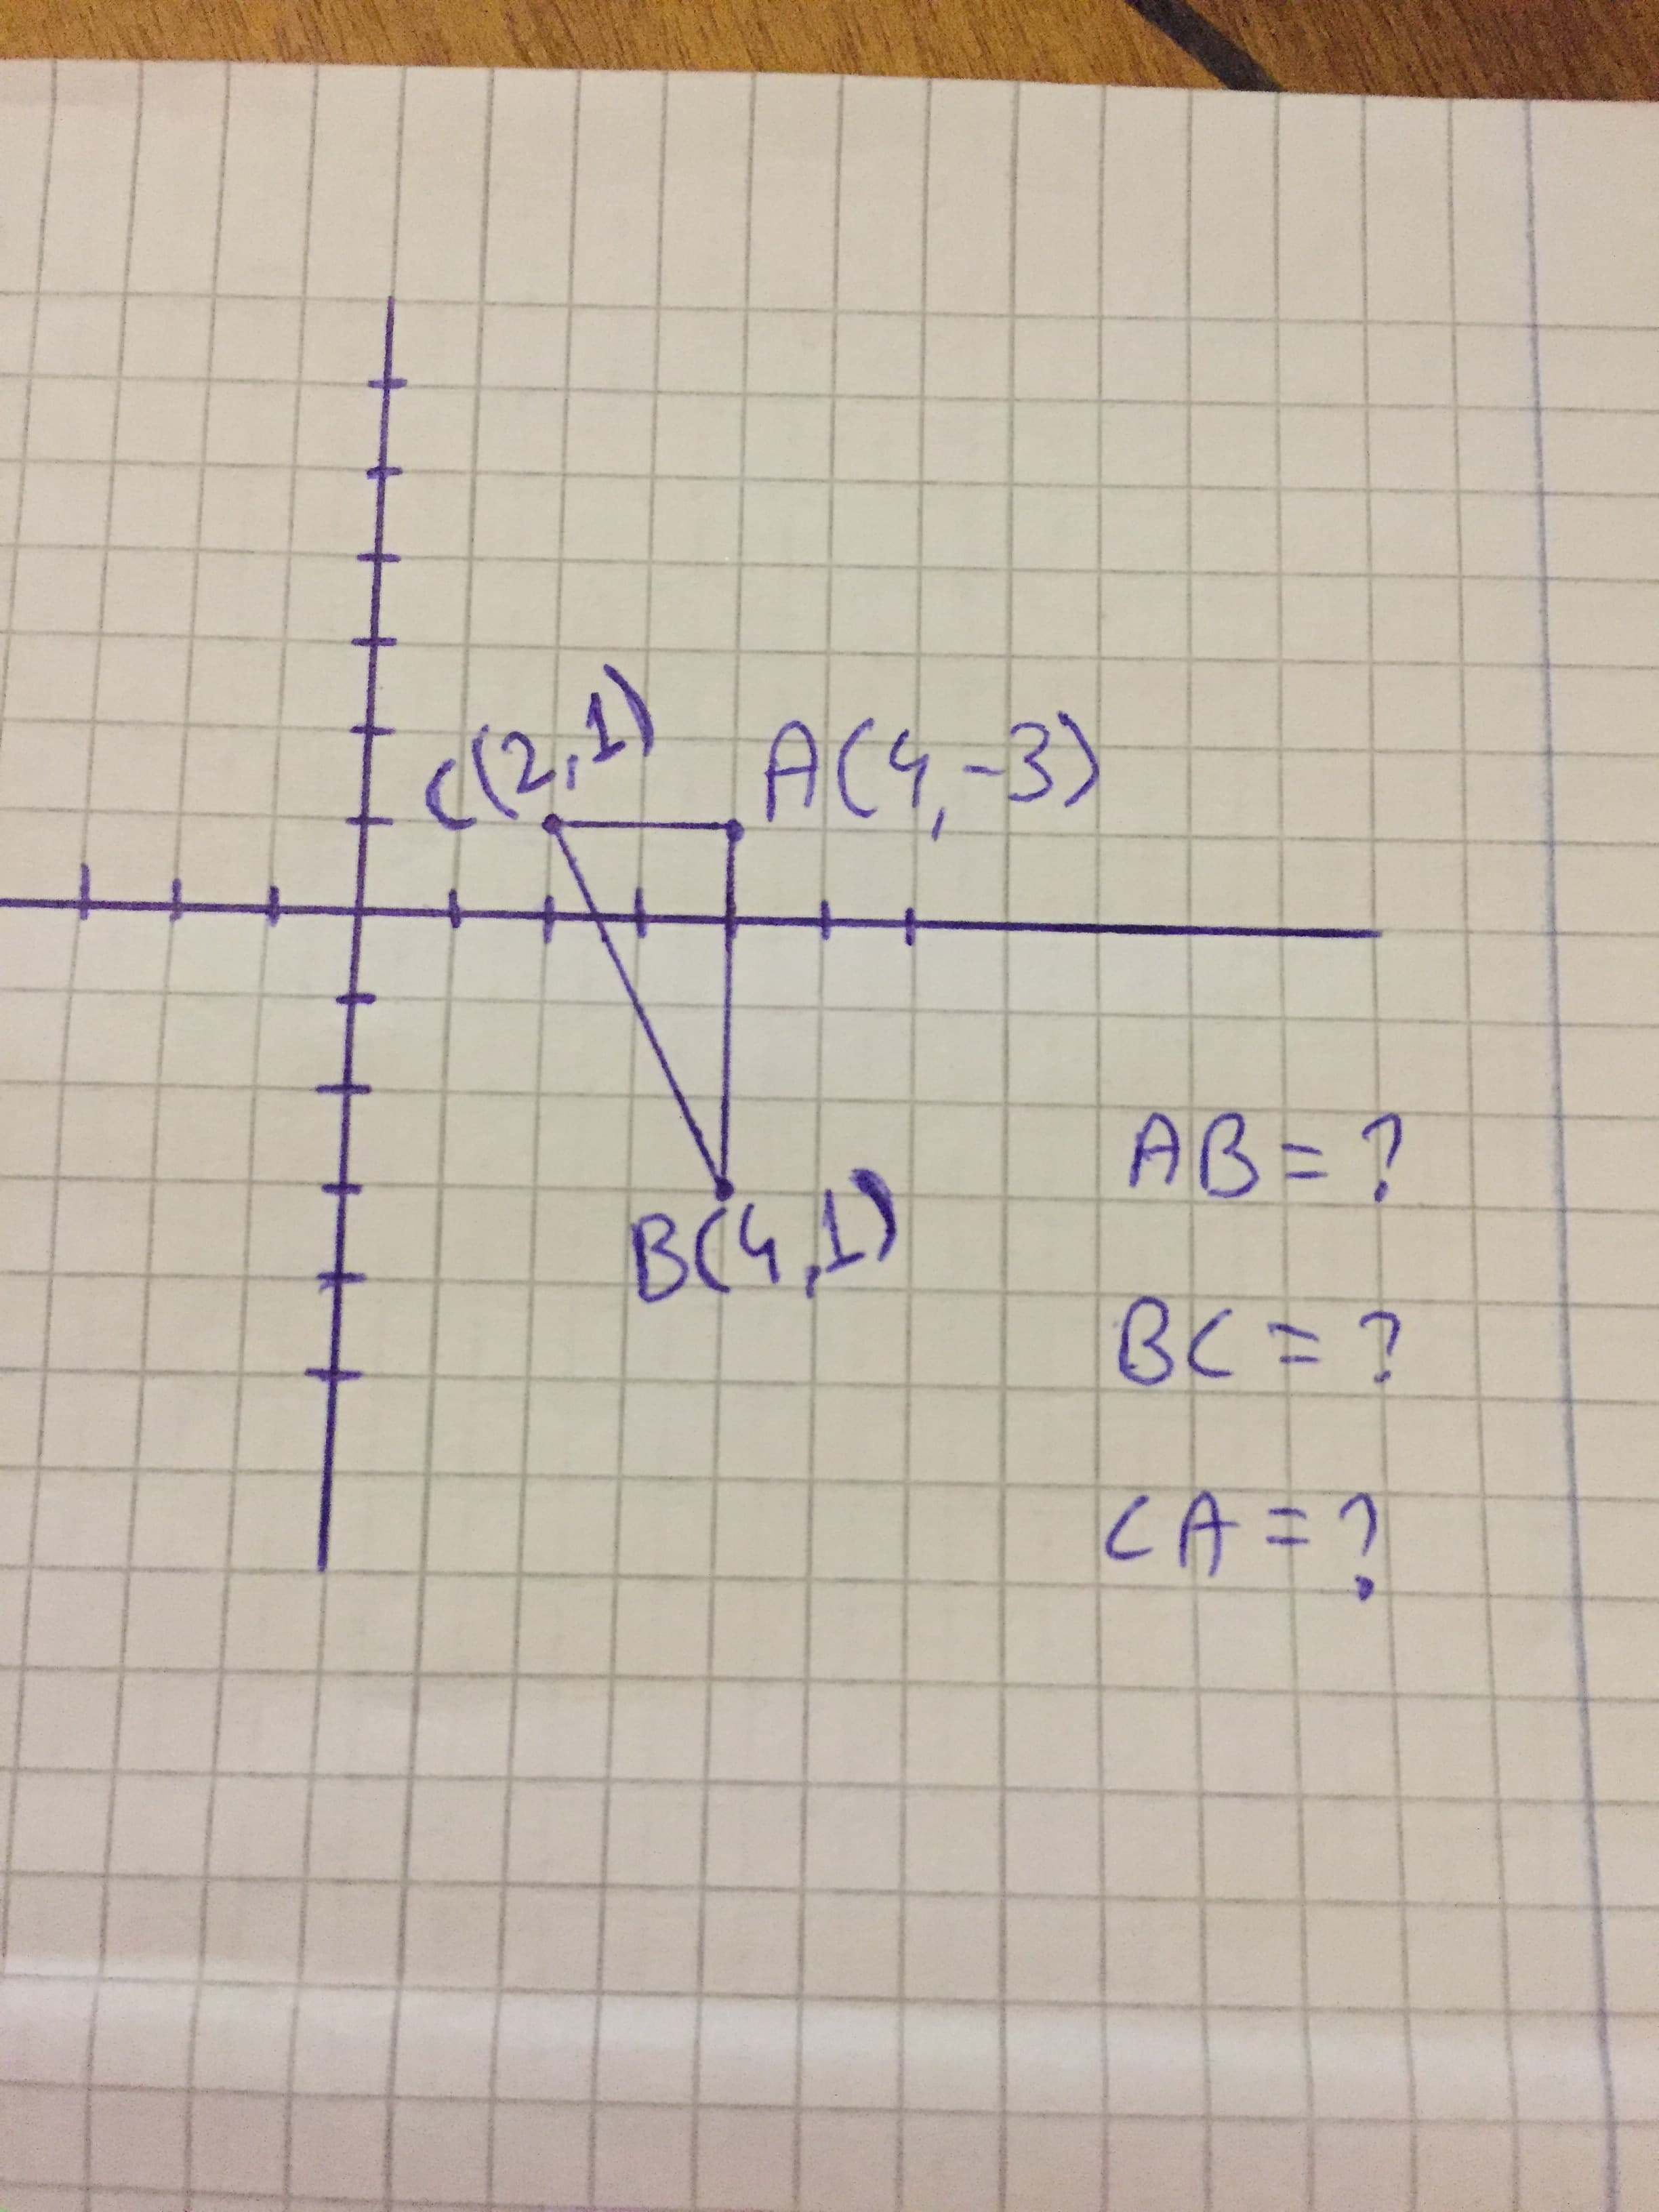 ((2,1)
ACG,-3)
AB=?
BO
BC =?
CA=?
